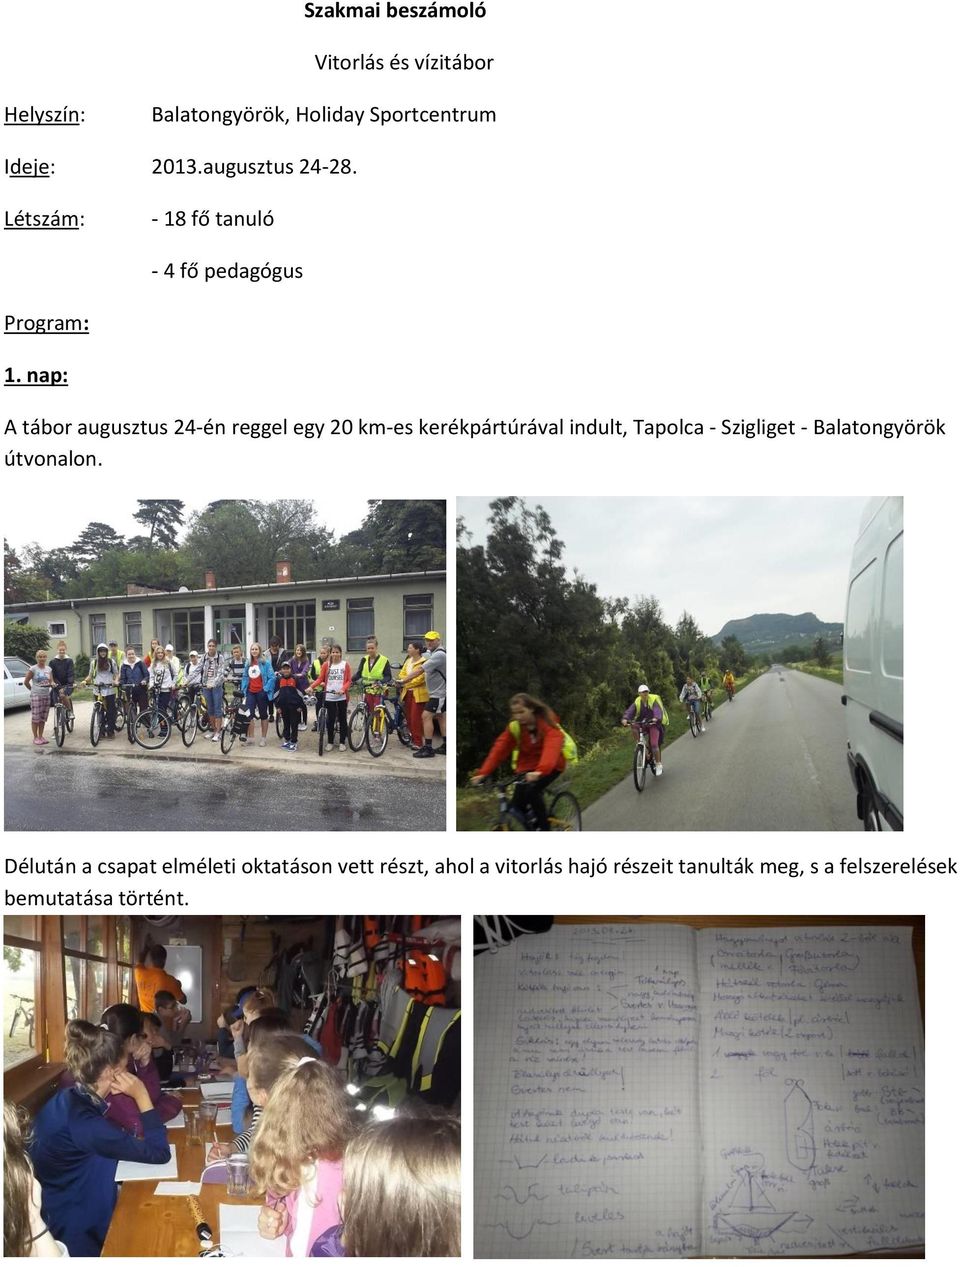 nap: A tábor augusztus 24-én reggel egy 20 km-es kerékpártúrával indult, Tapolca - Szigliget -